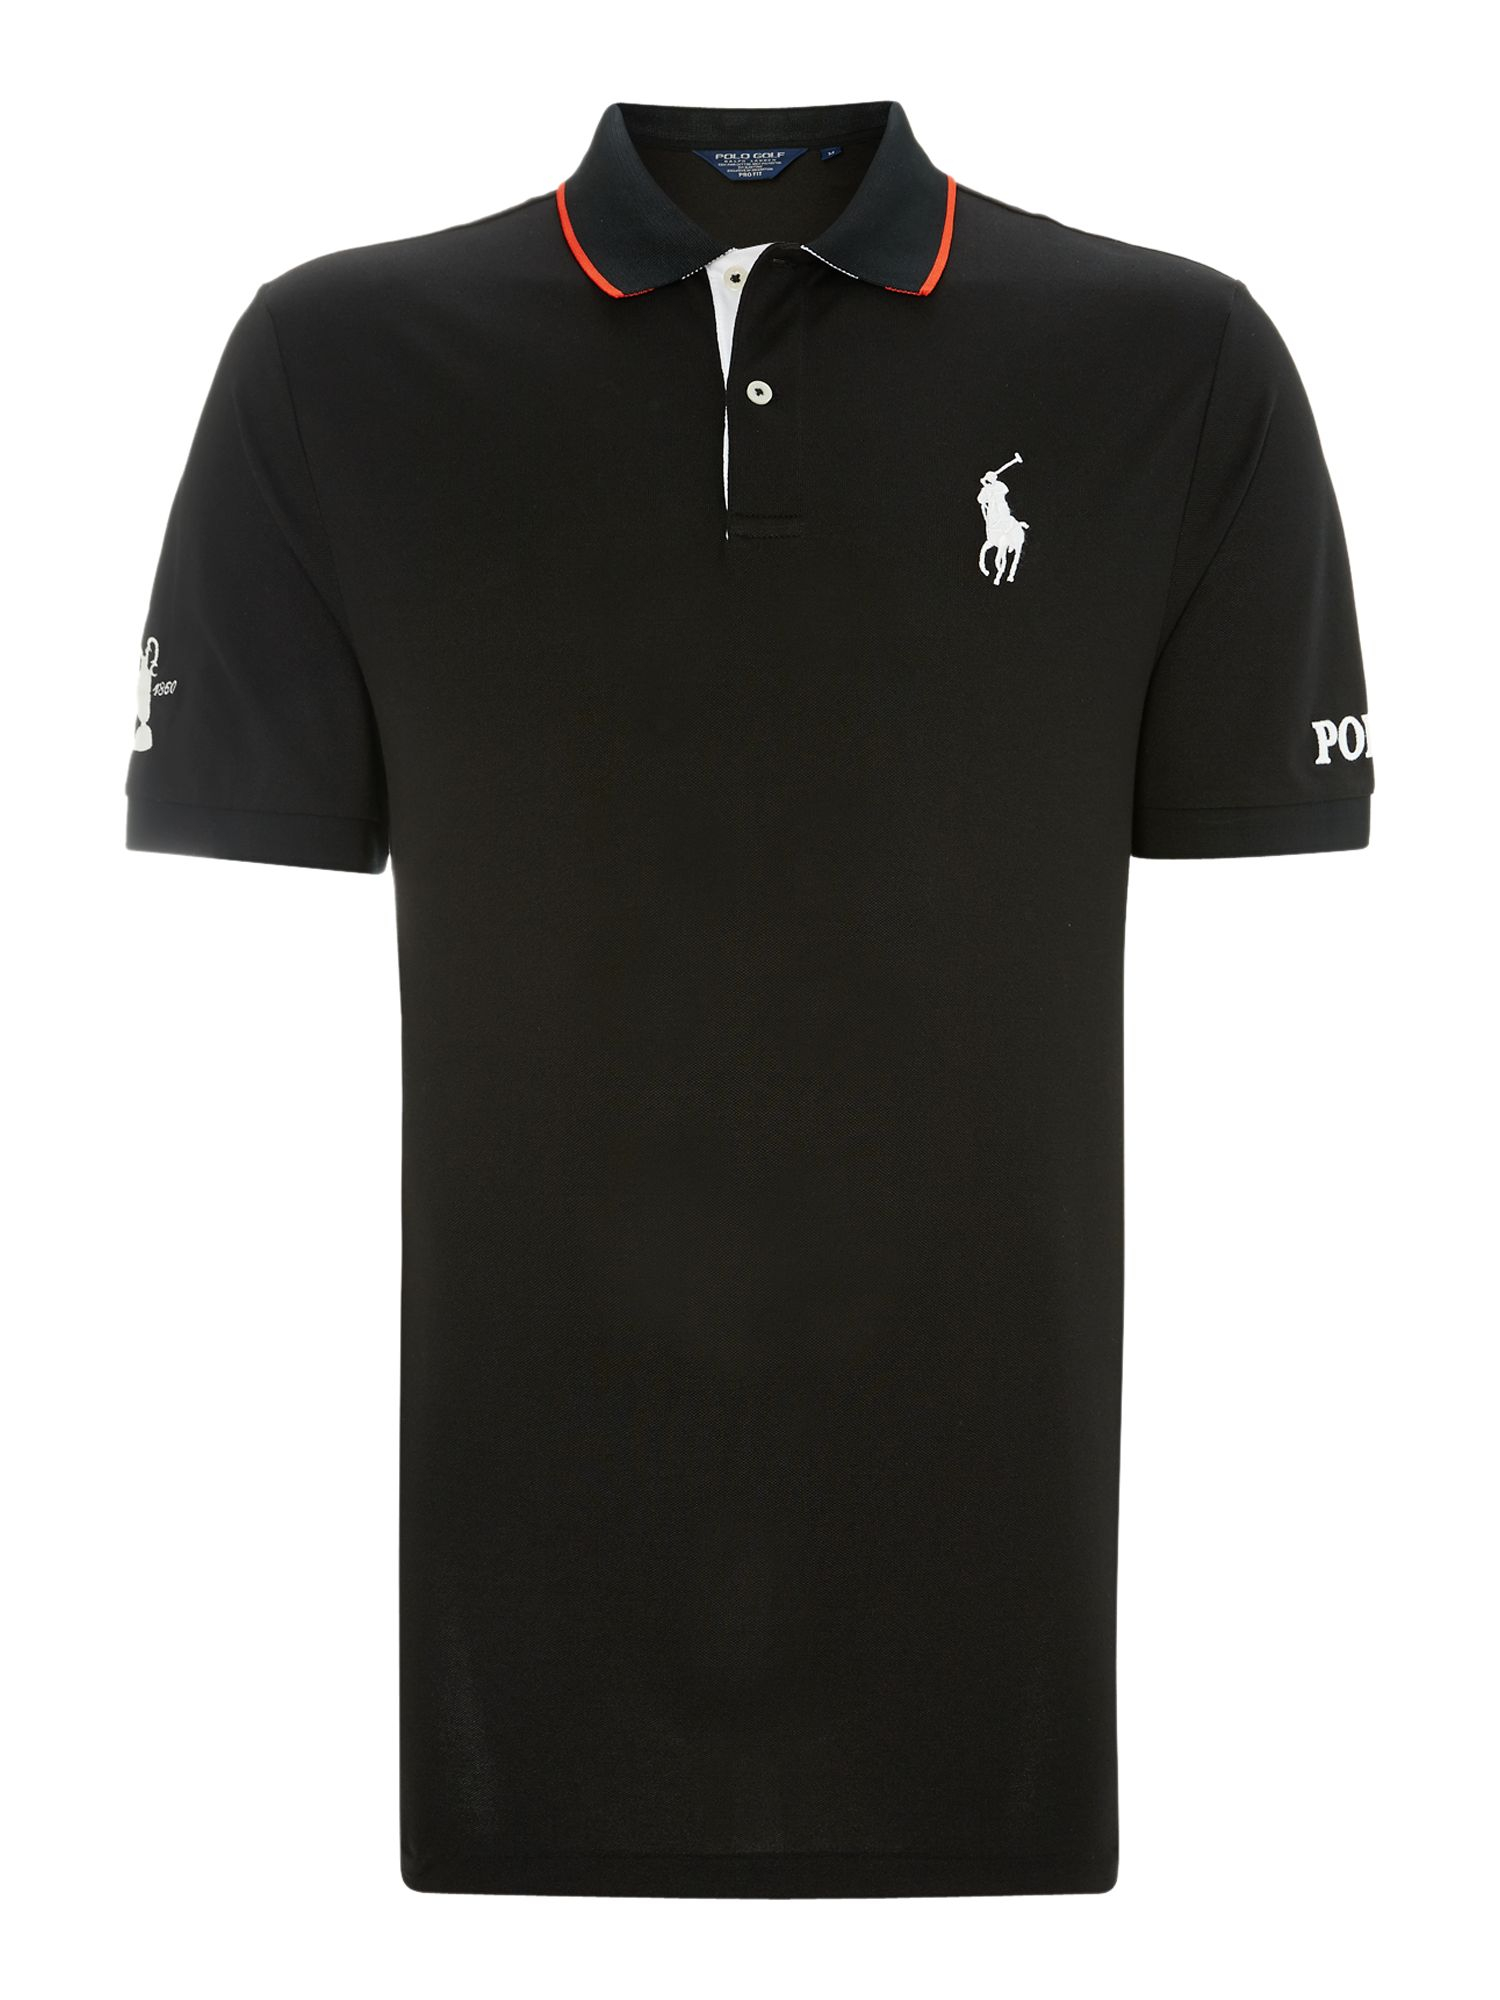 Polo Ralph Lauren Golf Polo Golf The Open Polo Shirt in Black for Men